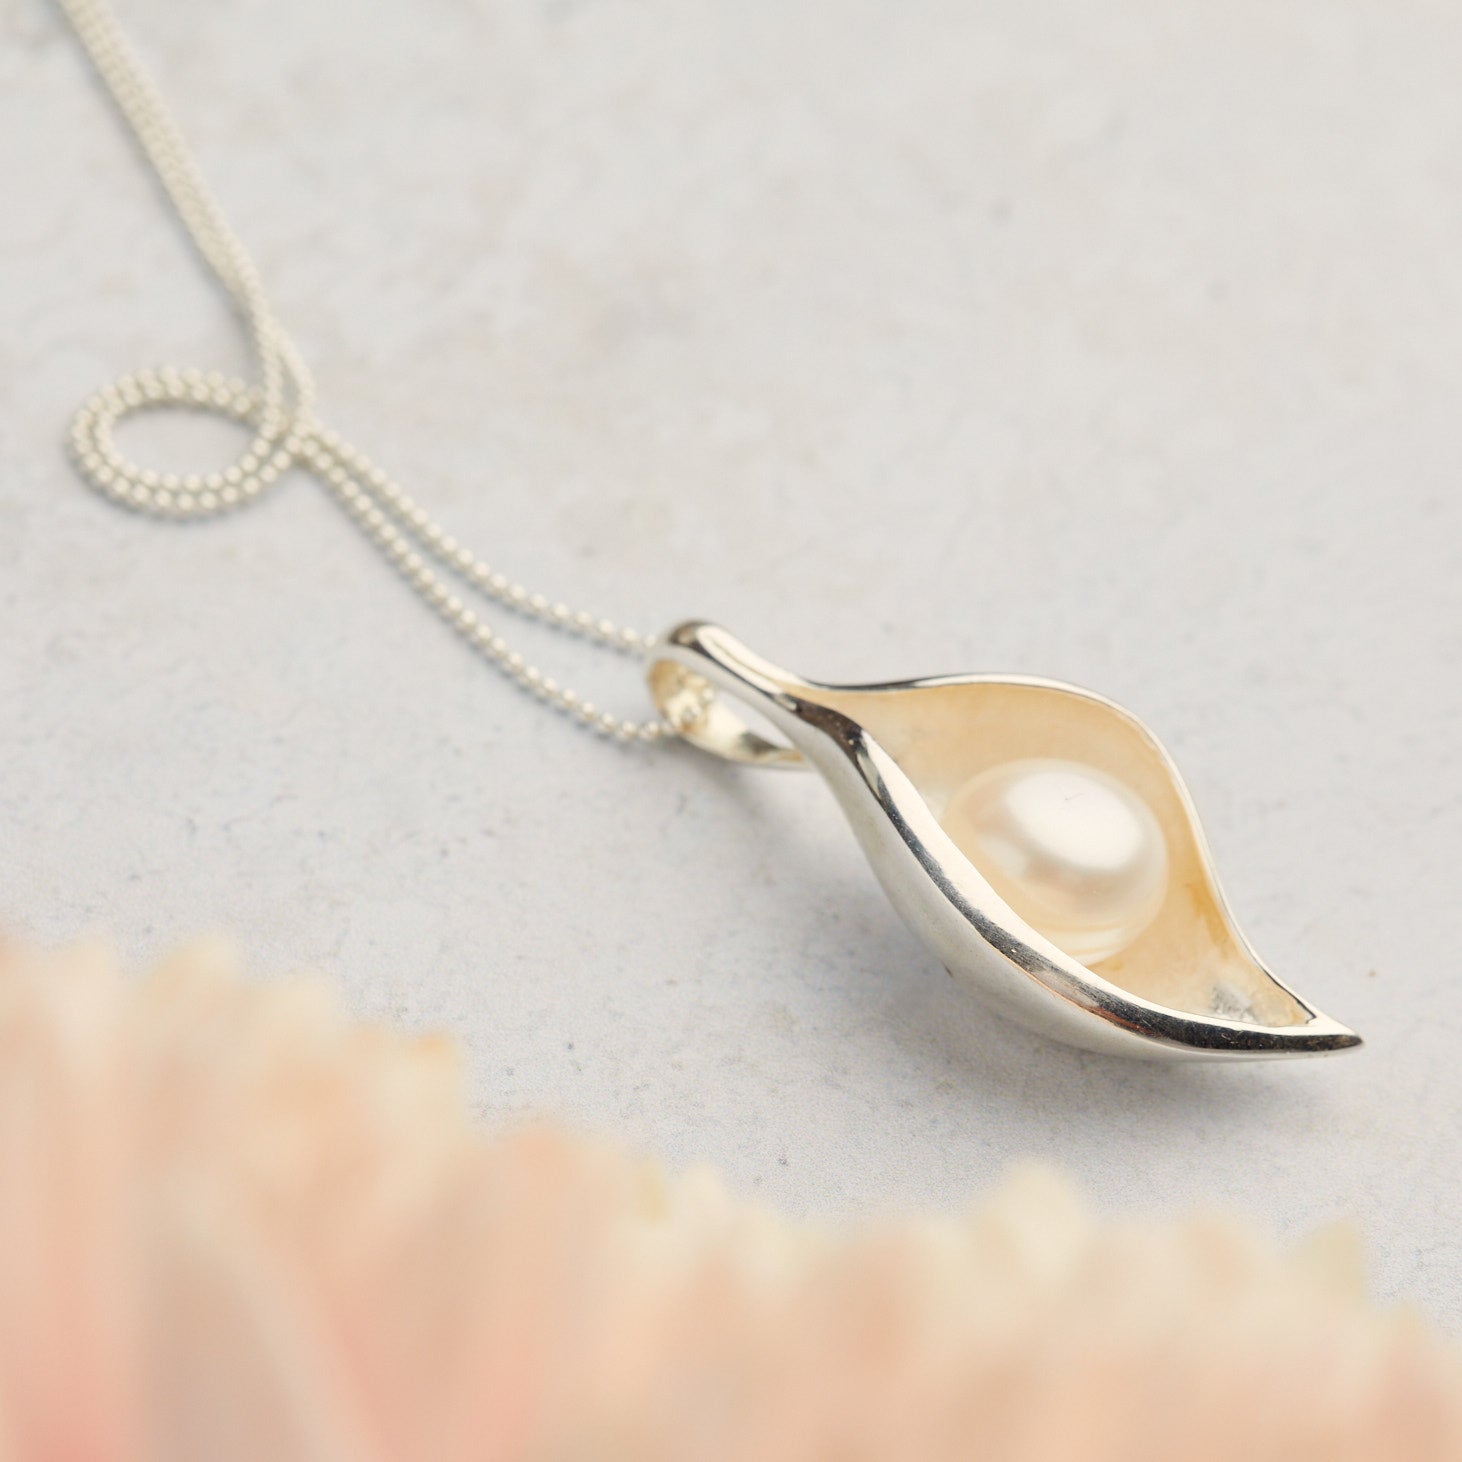 Venus Pearl Necklace Silver